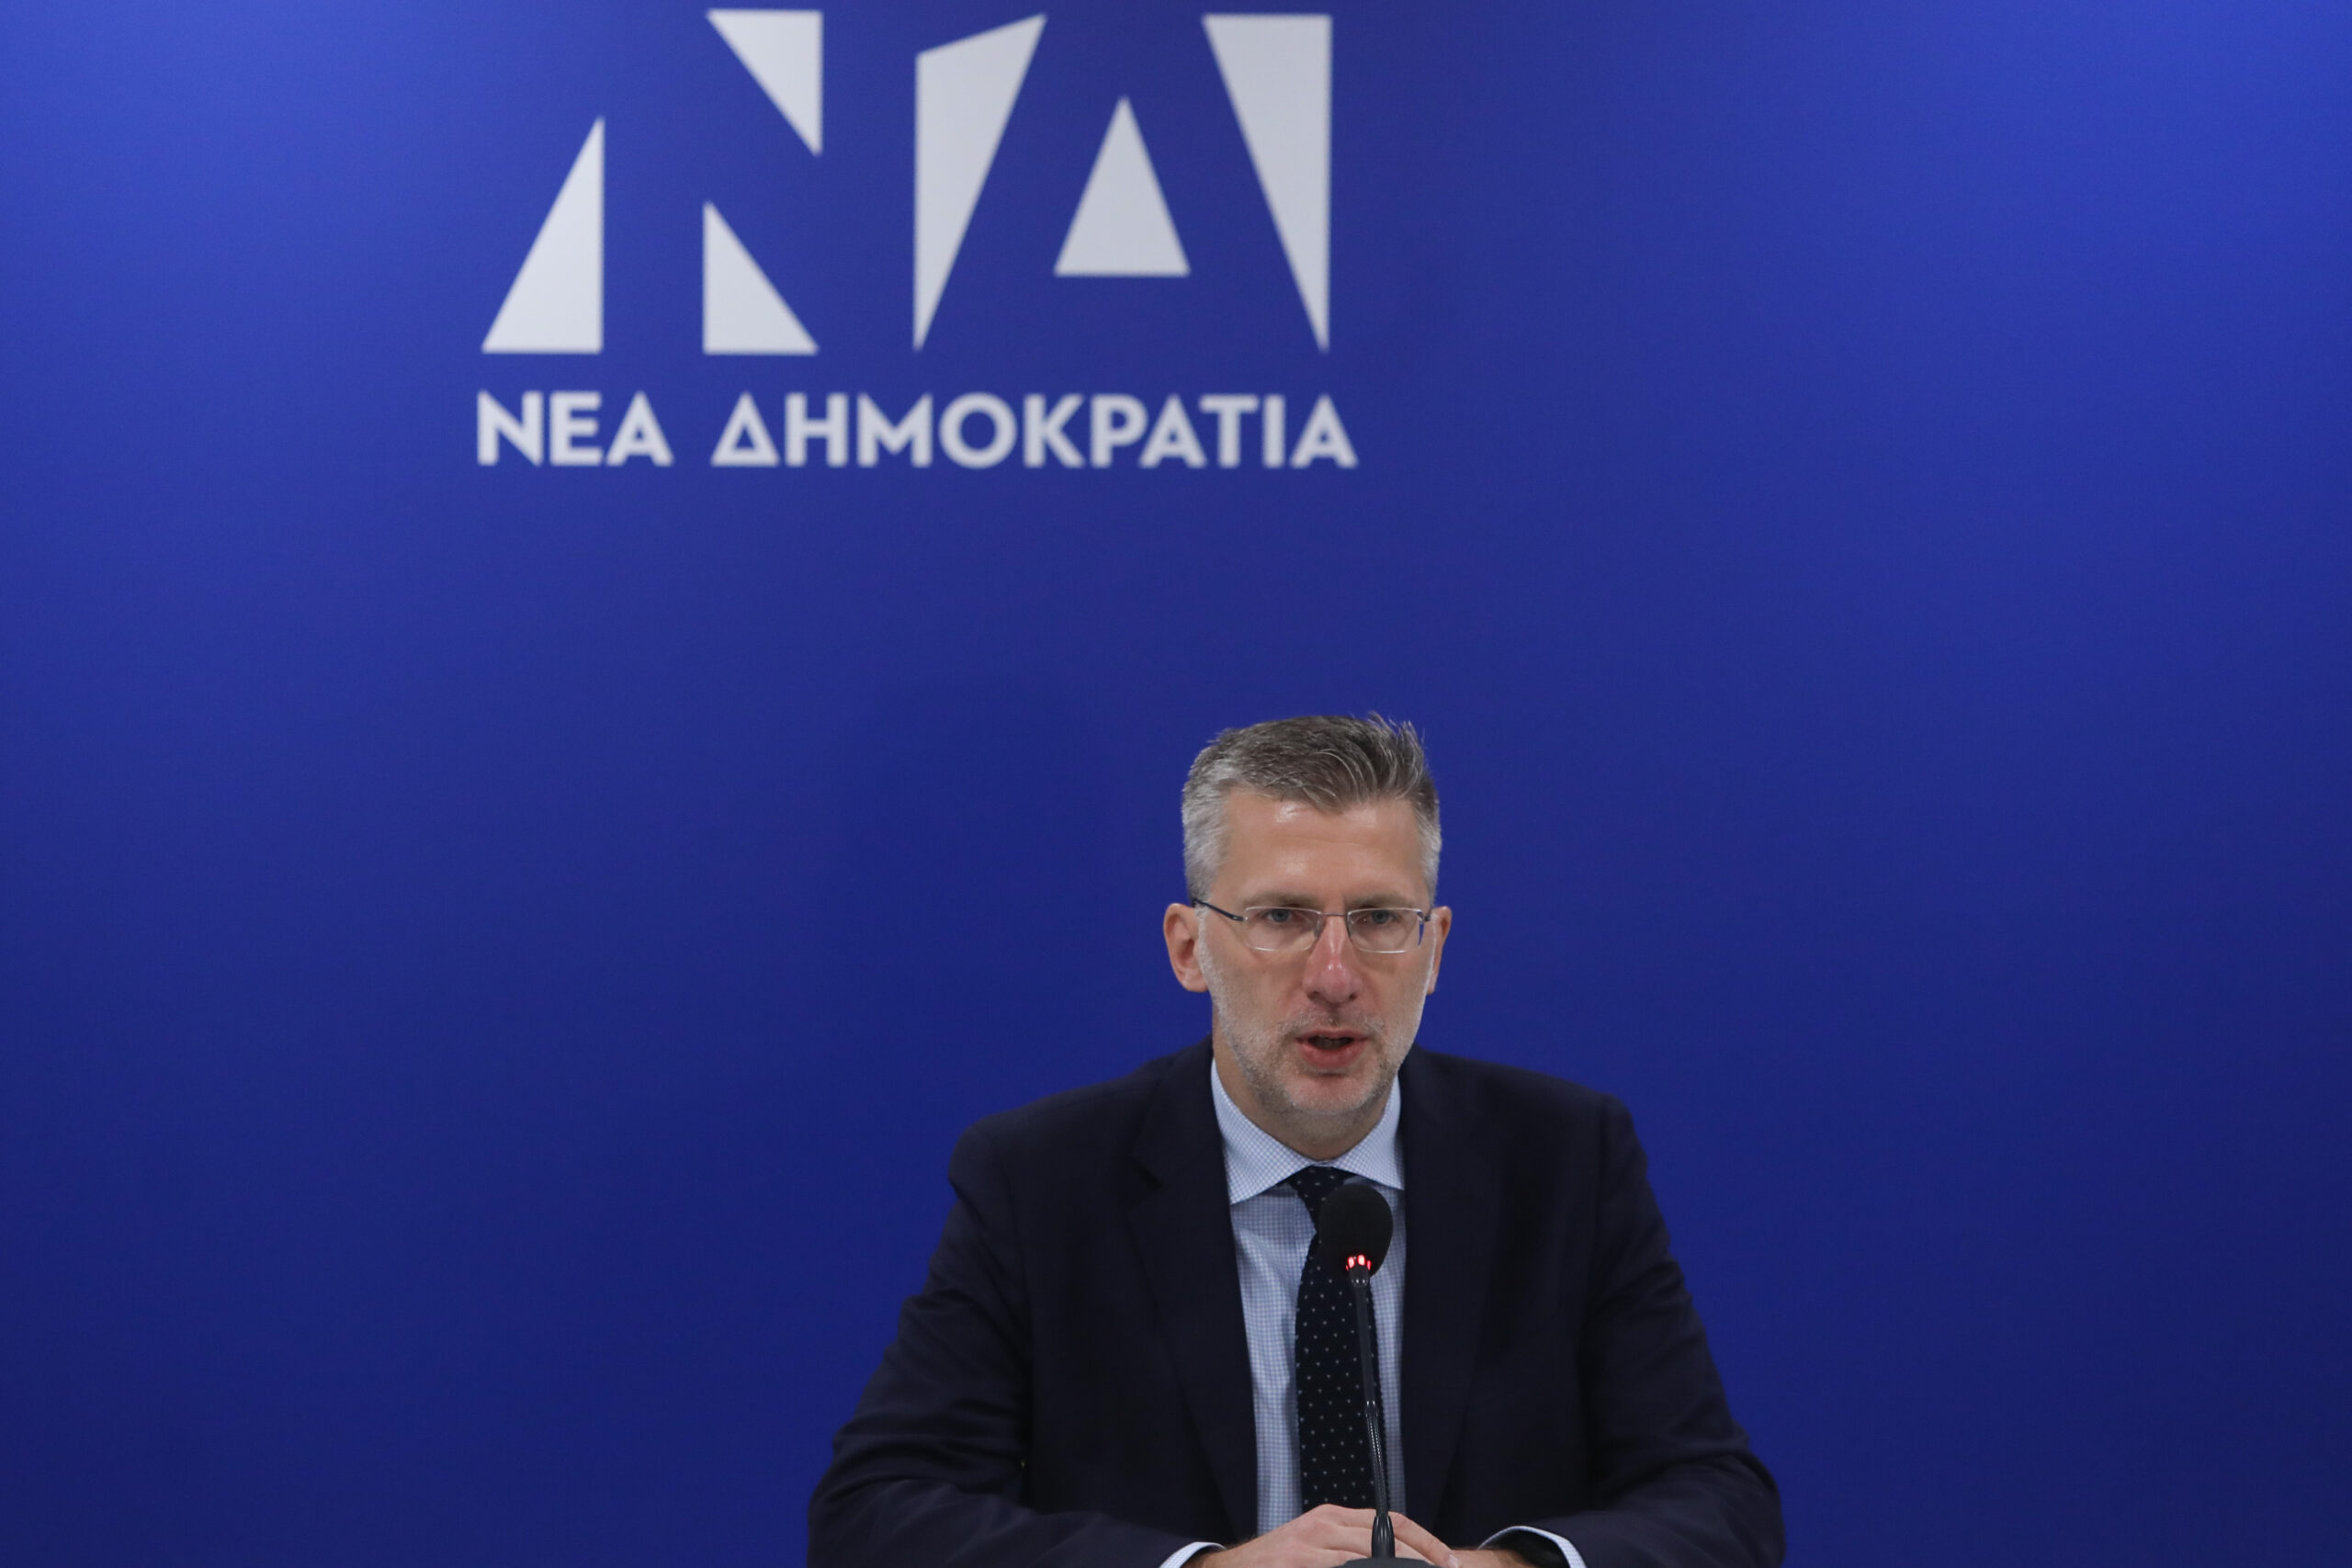 Α. Σκέρτσος σε ΣΥΡΙΖΑ και ΠΑΣΟΚ: «Αν ήταν υπεύθυνες πολιτικές δυνάμεις εξουσίας θα πρότειναν αντίστοιχα υπεύθυνα μέτρα»